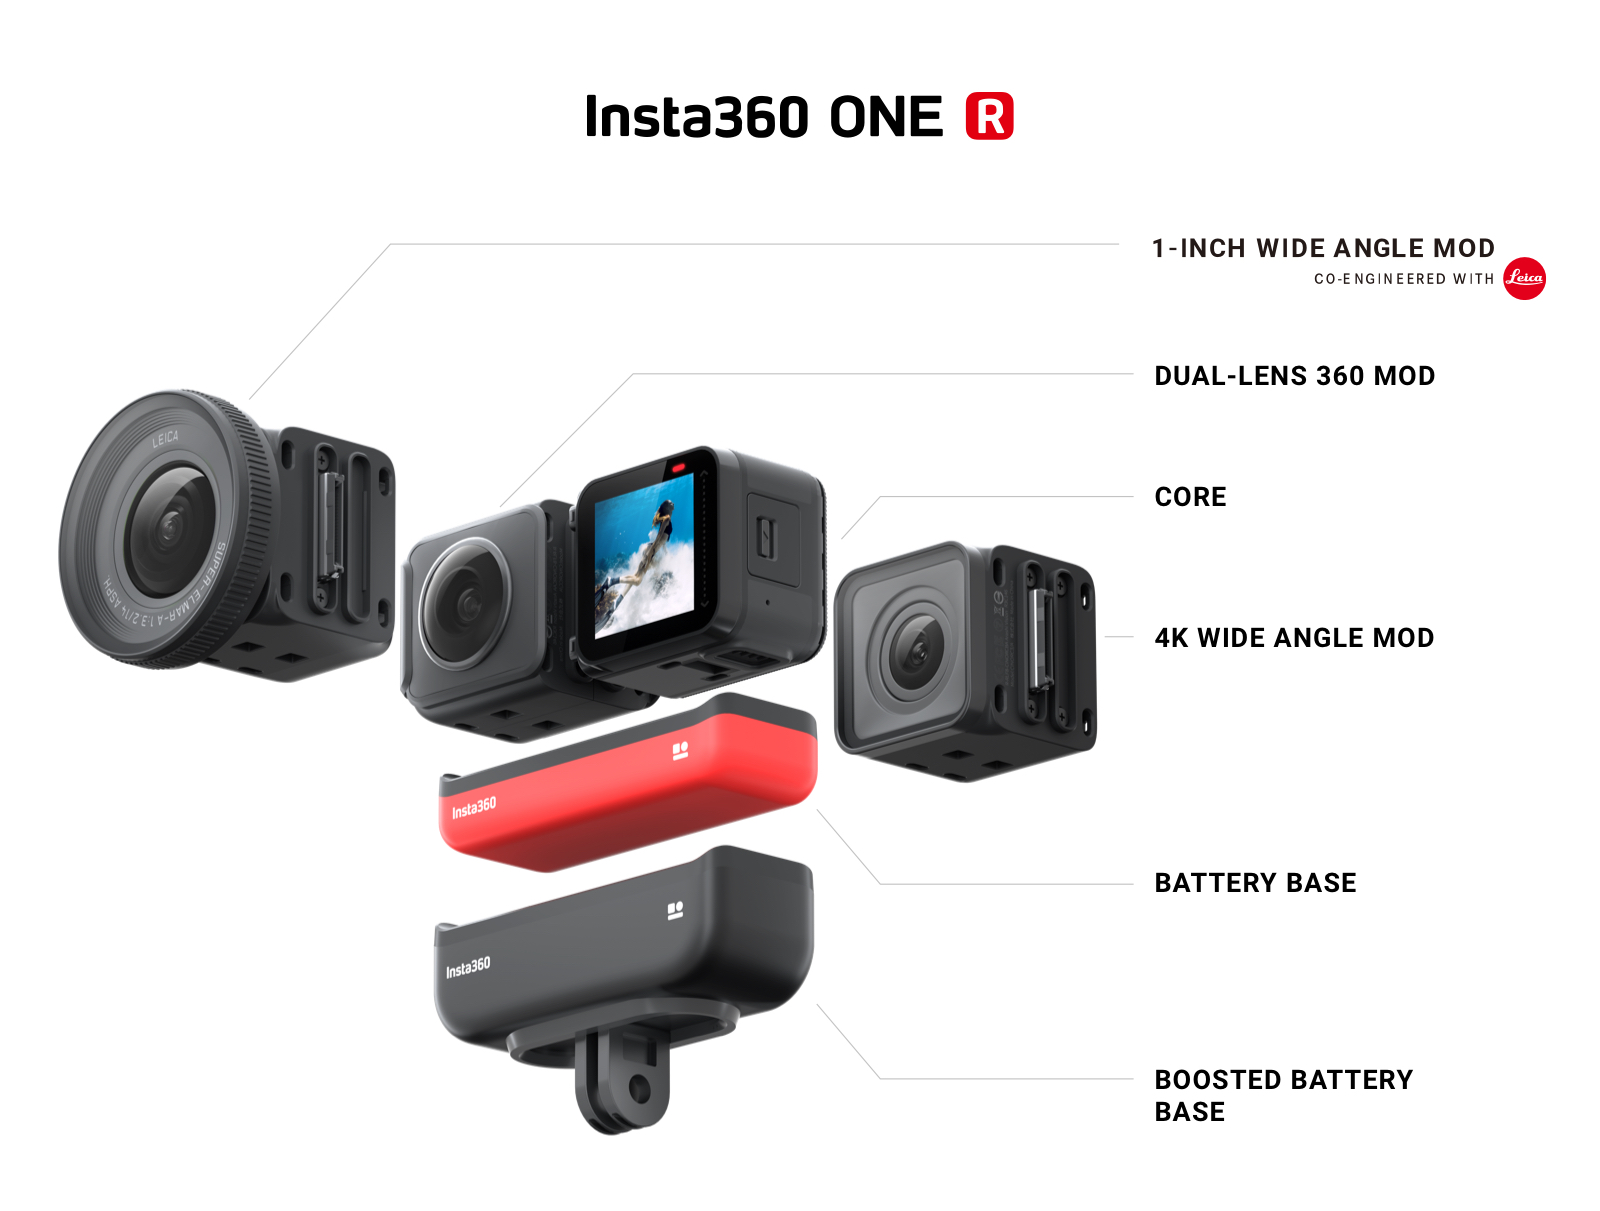 Insta360 ONE R Dual Lens Mod